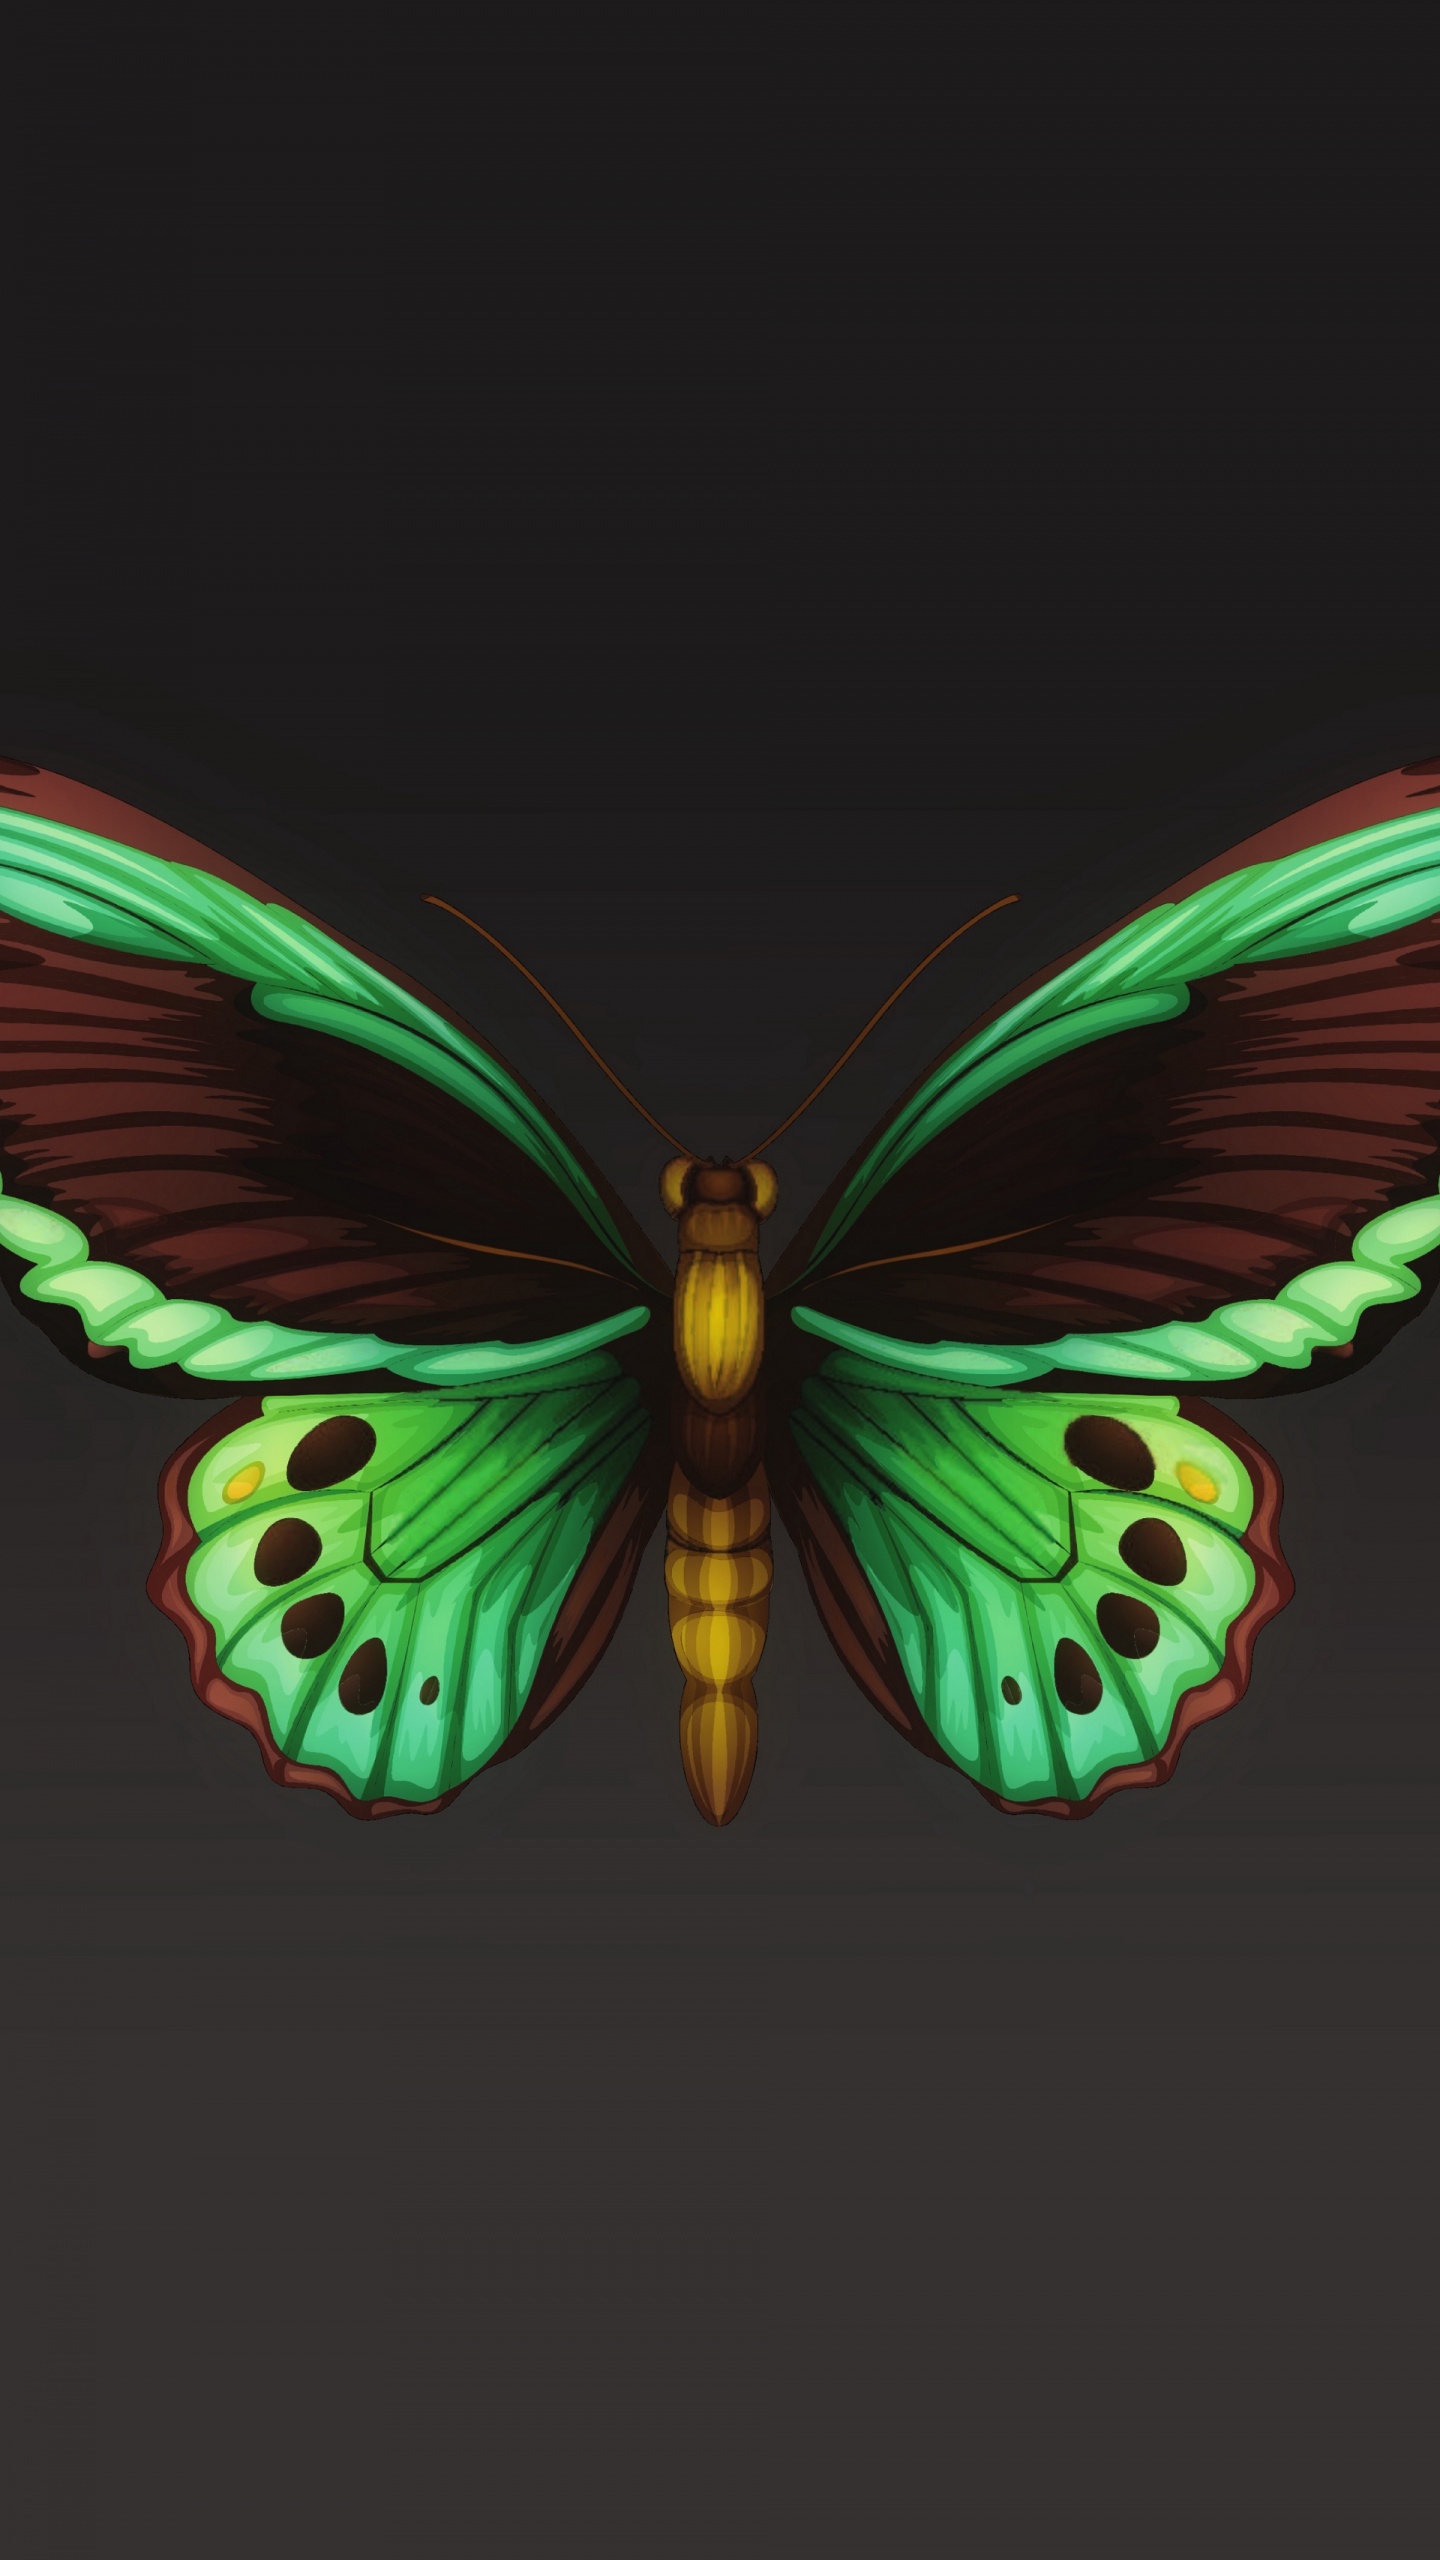 飞蛾和蝴蝶, 昆虫, 翼, 对称, 节肢动物 壁纸 1440x2560 允许